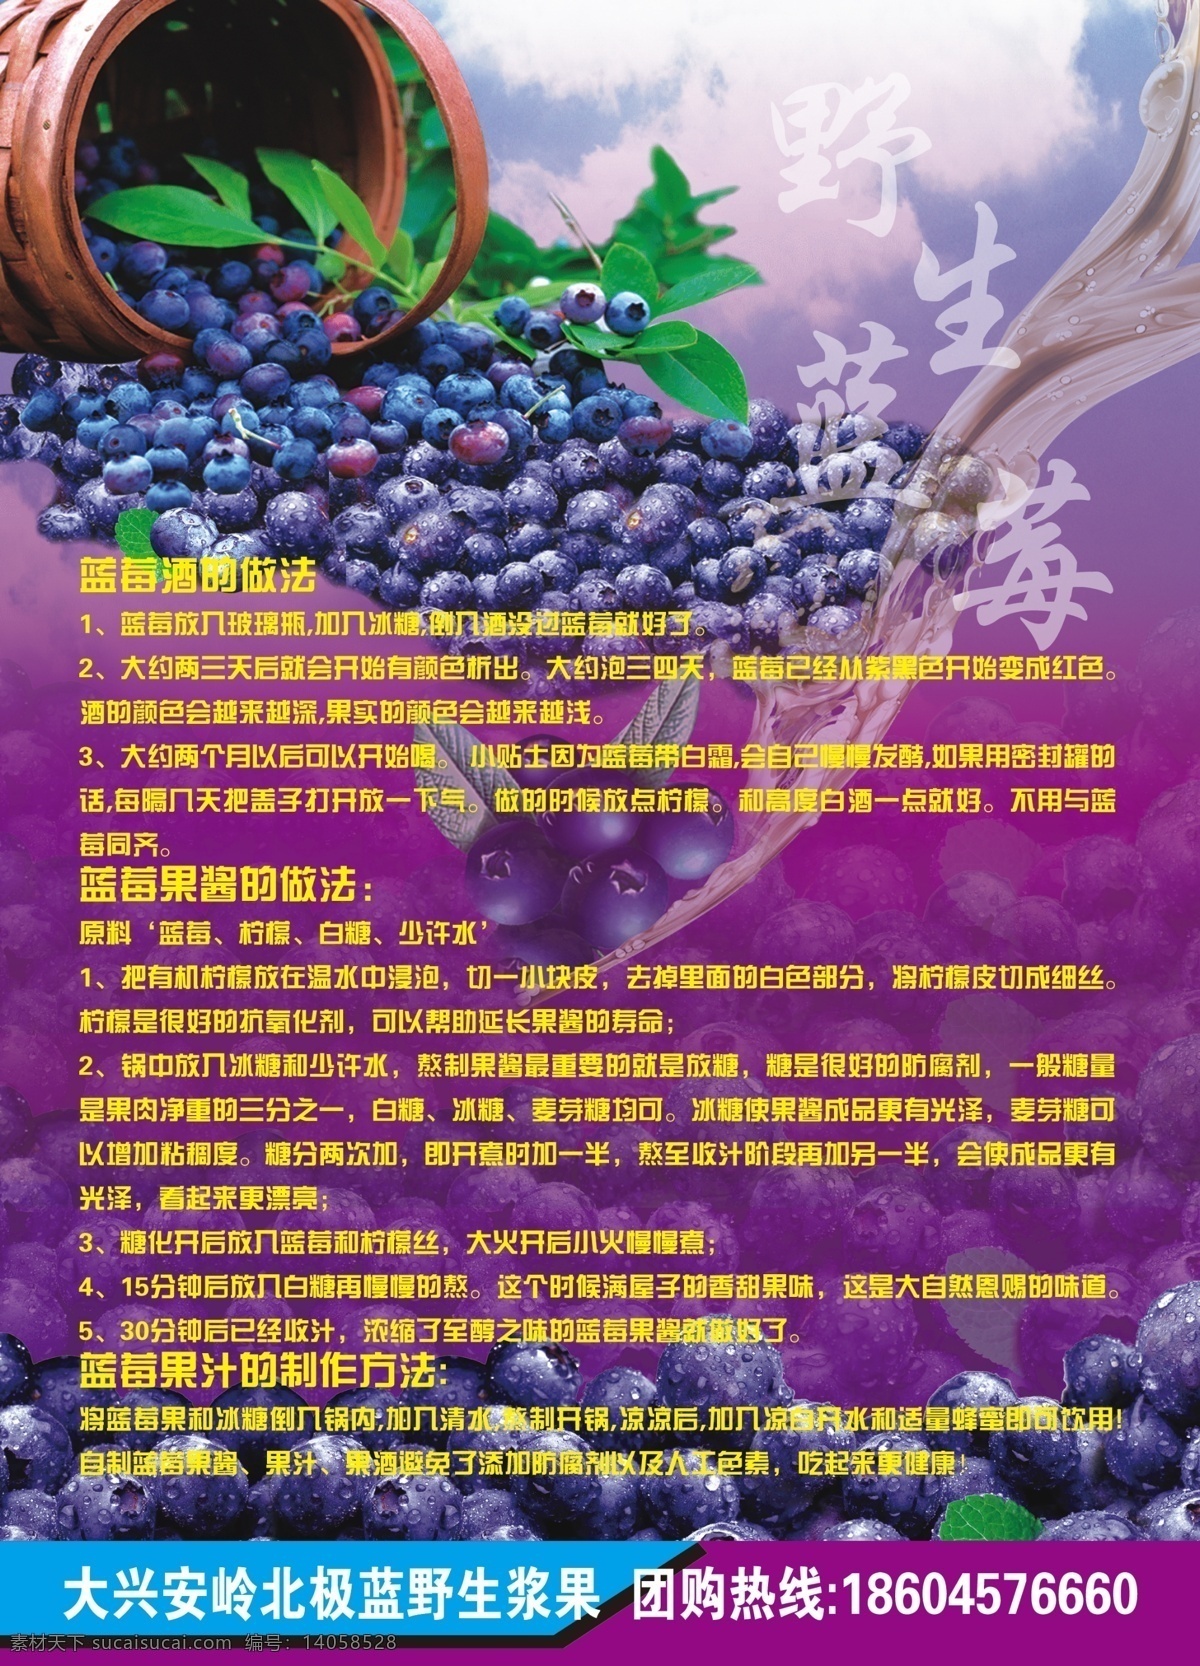 蓝莓酒宣传单 野生 蓝莓 蓝莓酒 宣传单 dm 蓝莓酒介绍 dm宣传单 广告设计模板 源文件